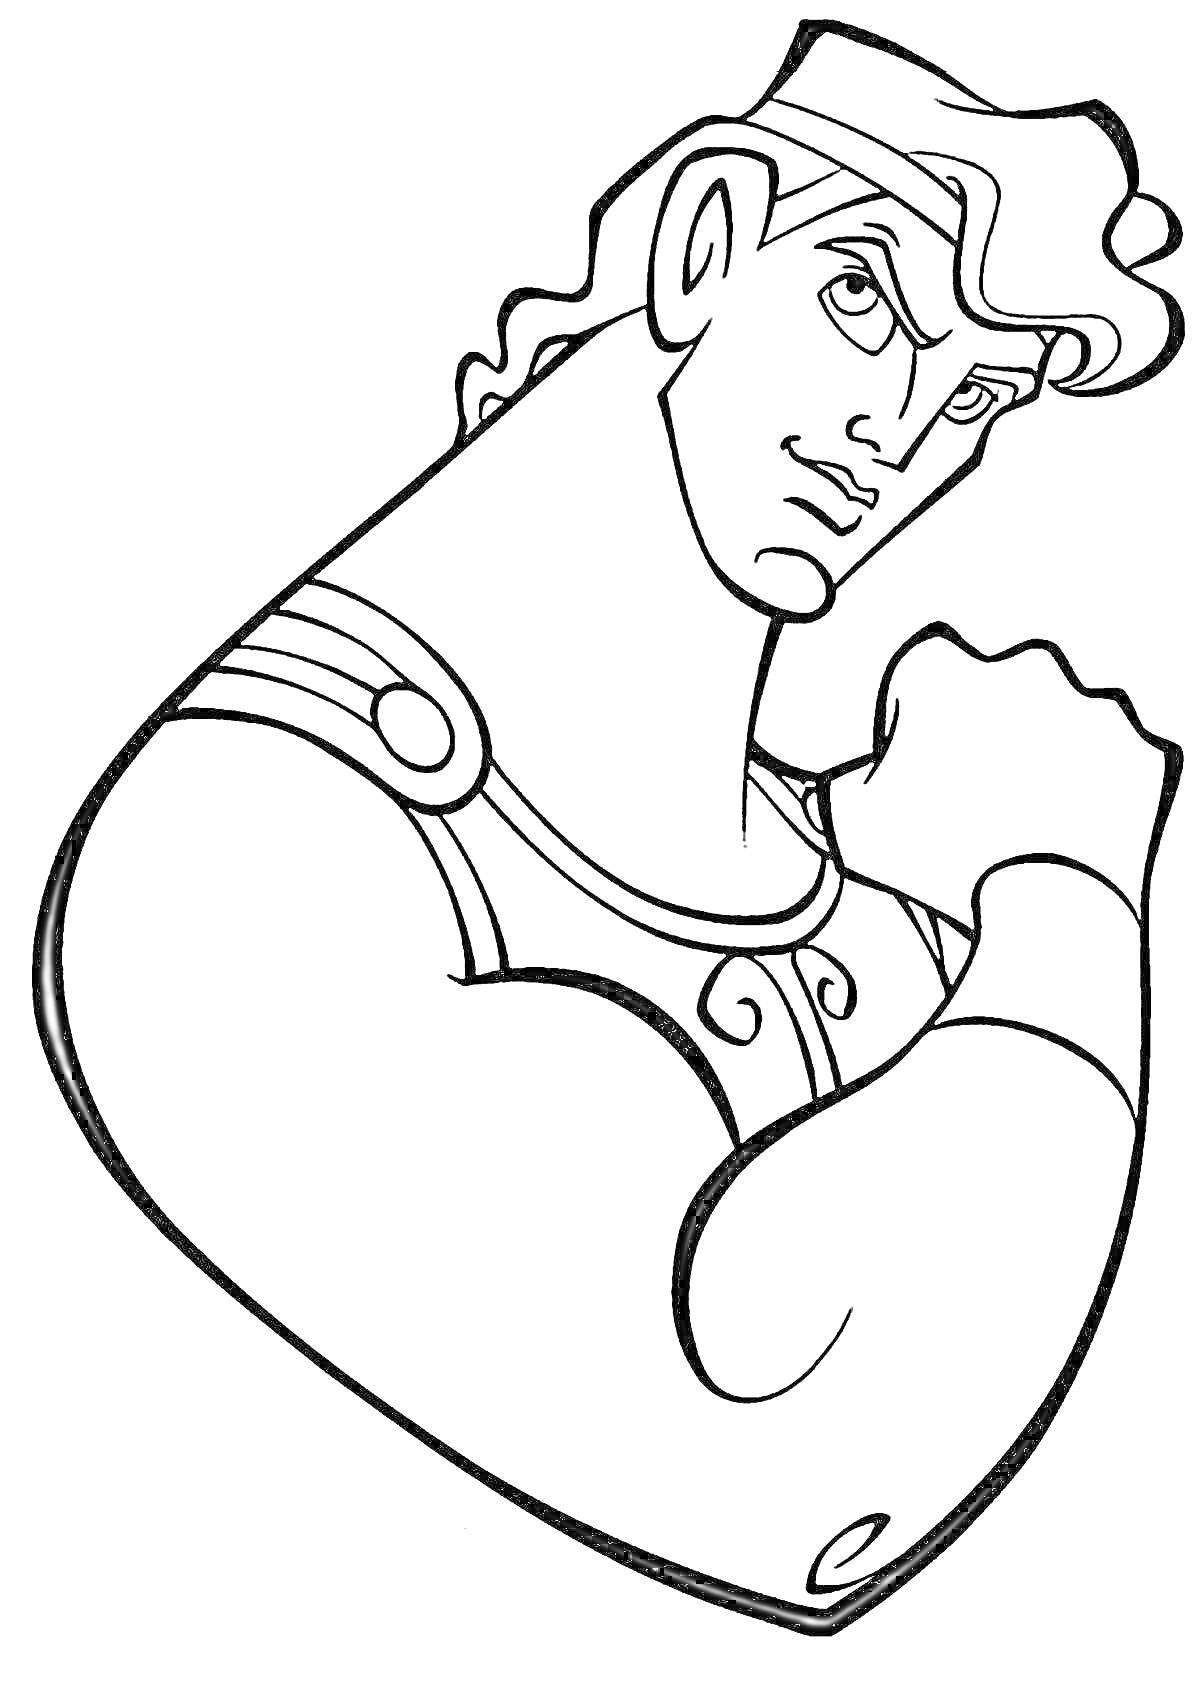 Раскраска Геракл в стойке с поднятым кулаком, детализация одежды